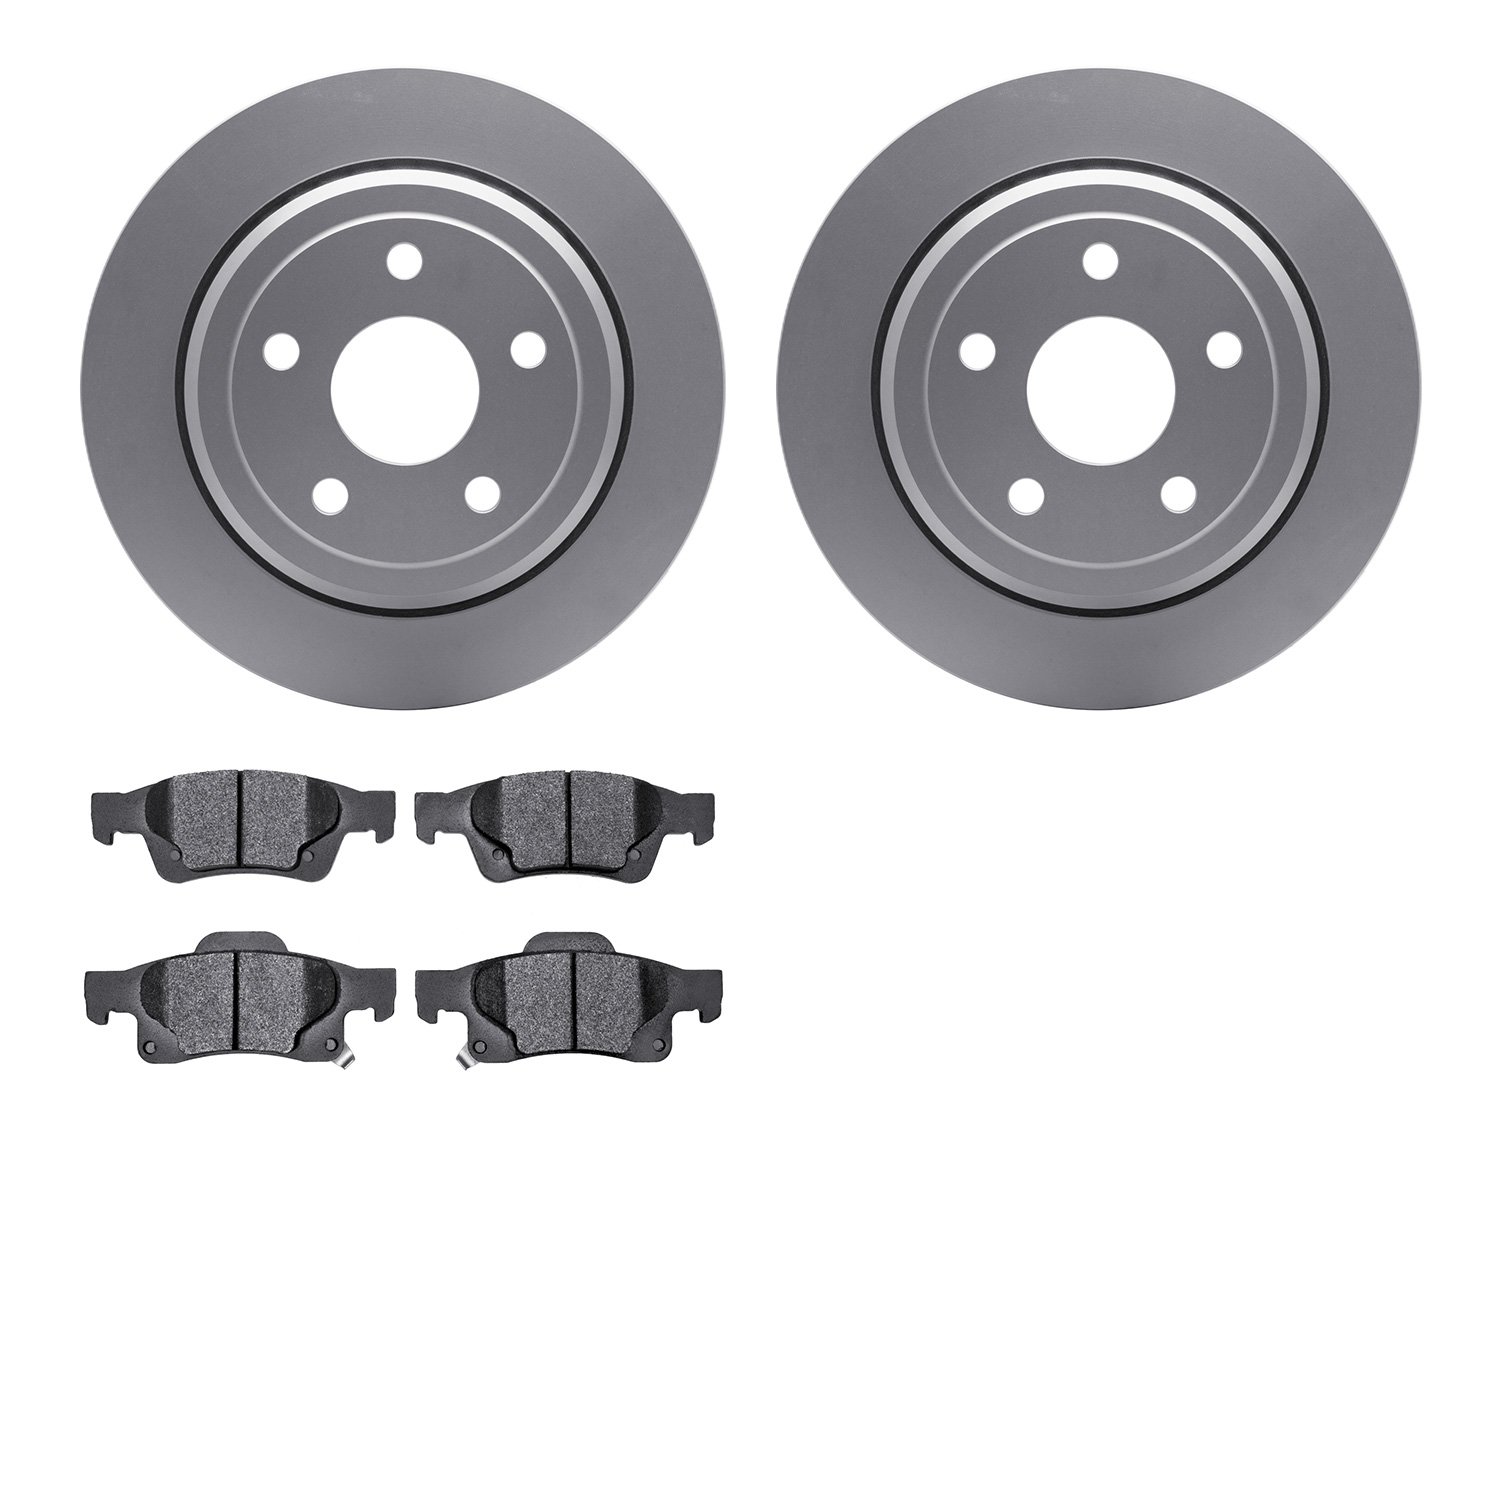 4202-42003 Geospec Brake Rotors w/Heavy-Duty Brake Pads Kit, Fits Select Mopar, Position: Rear